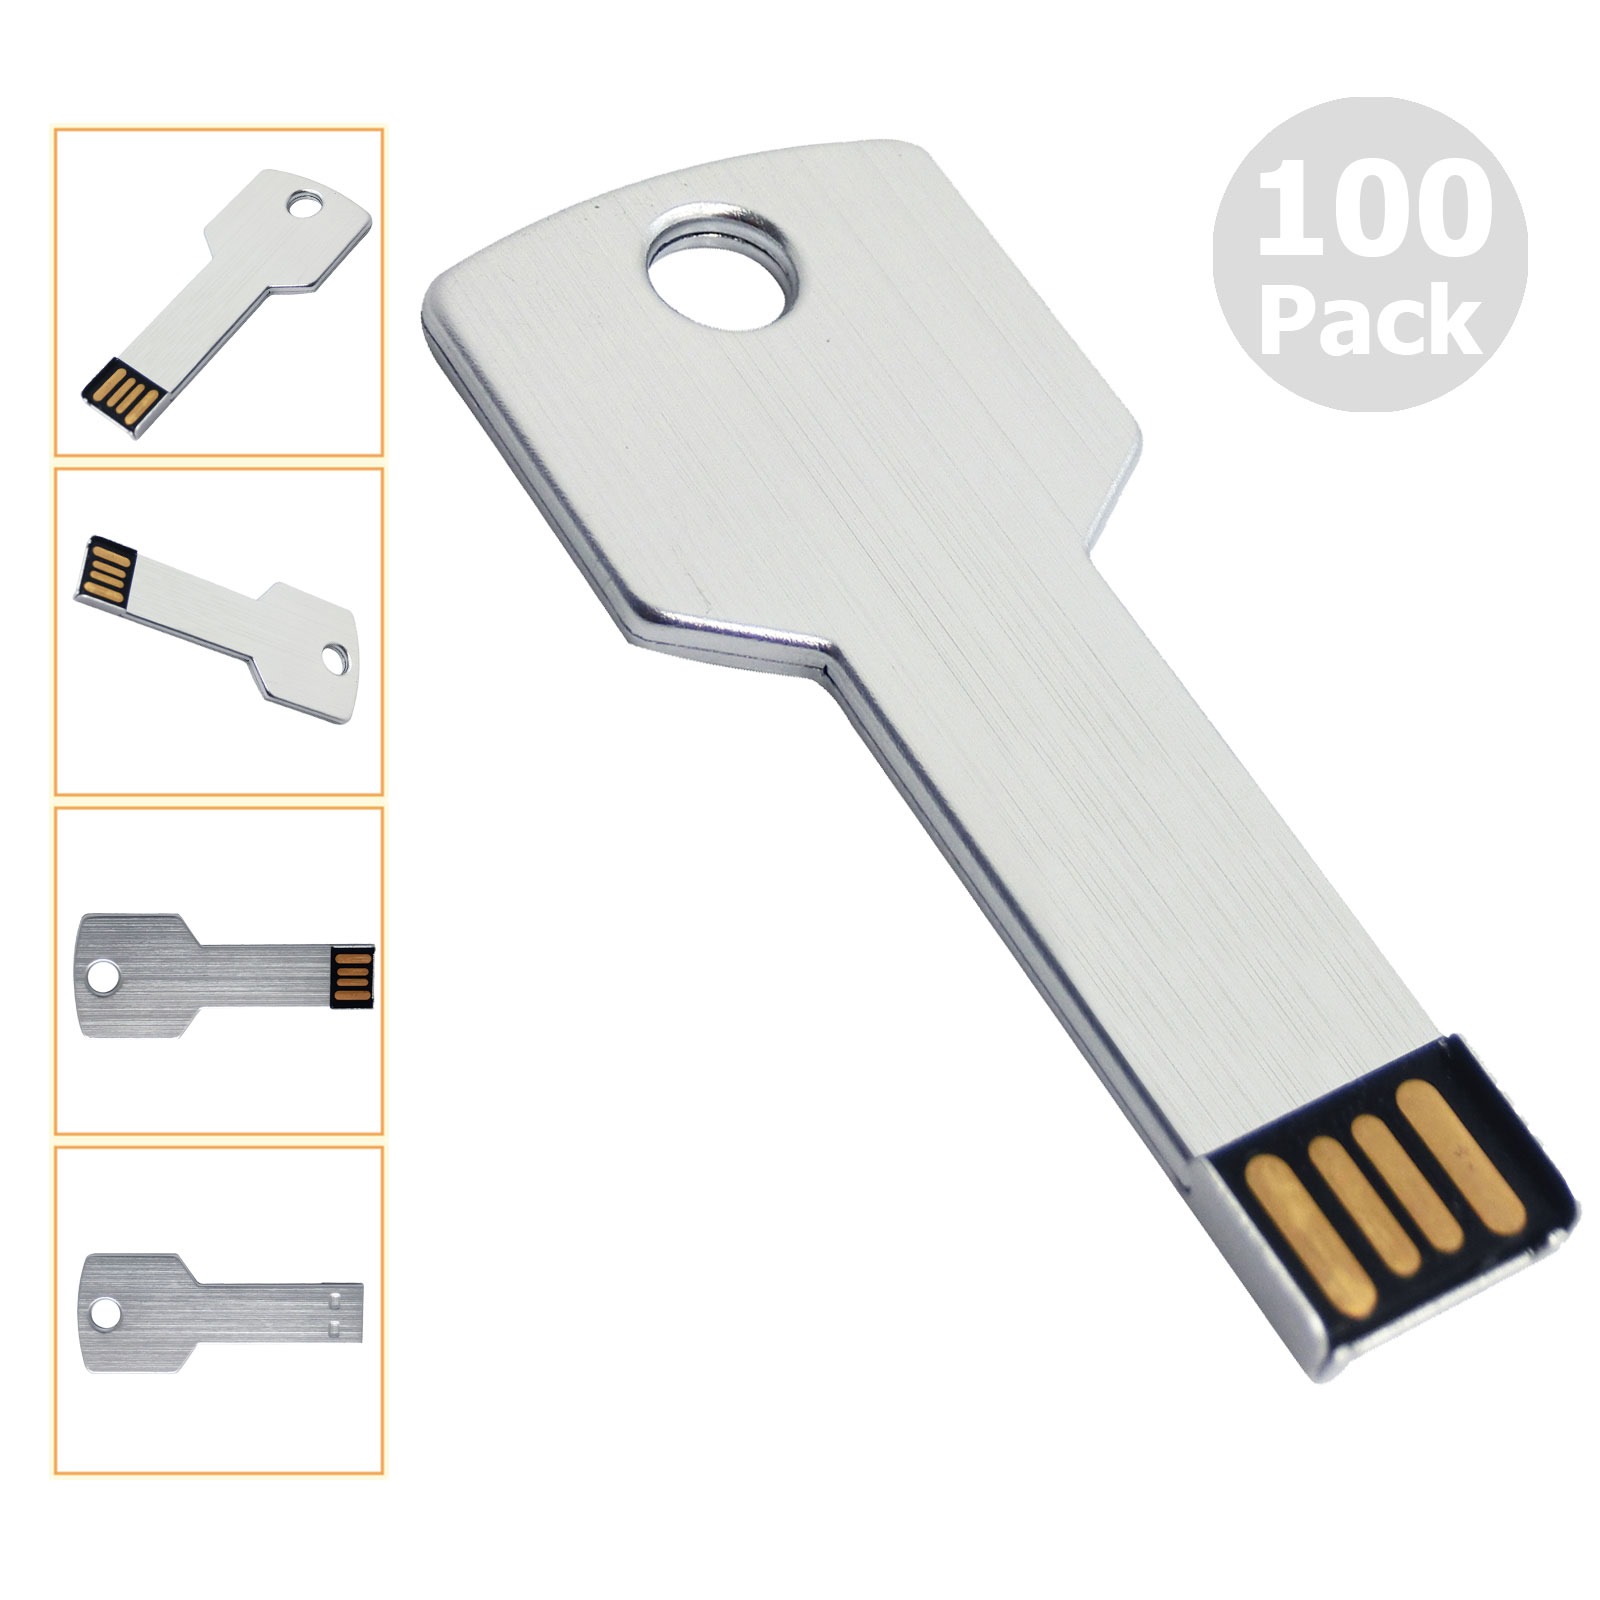 Livraison gratuite 100pcs 16 Go USB 2.0 Drives flash Flash Memory Stick Metal Key Médias vierges pour ordinateur portable